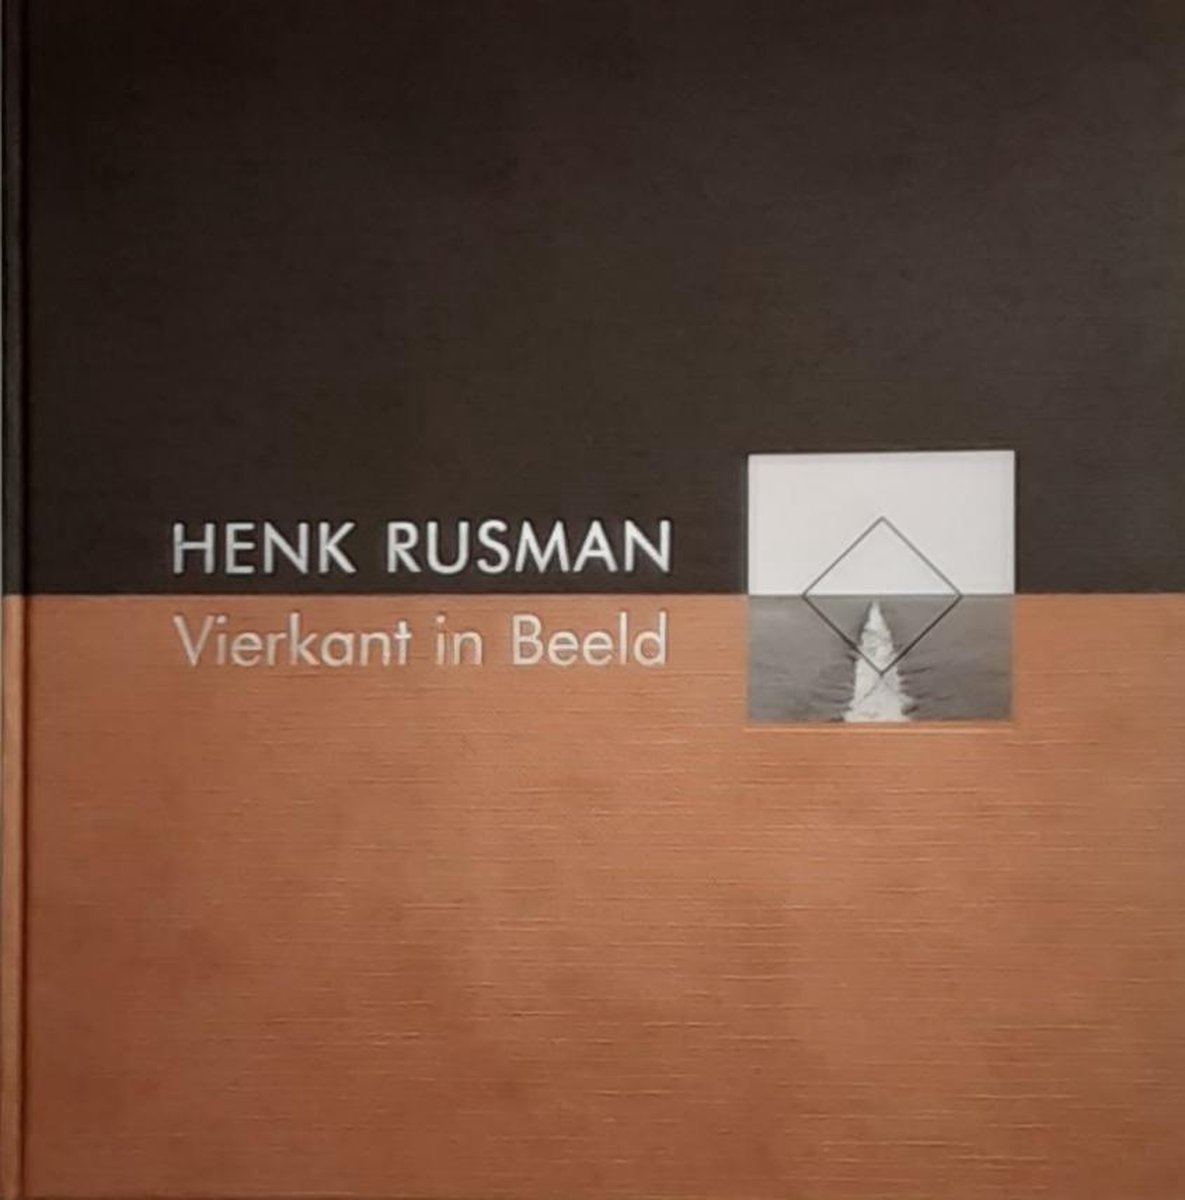 Henk Rusman vierkant in beeld